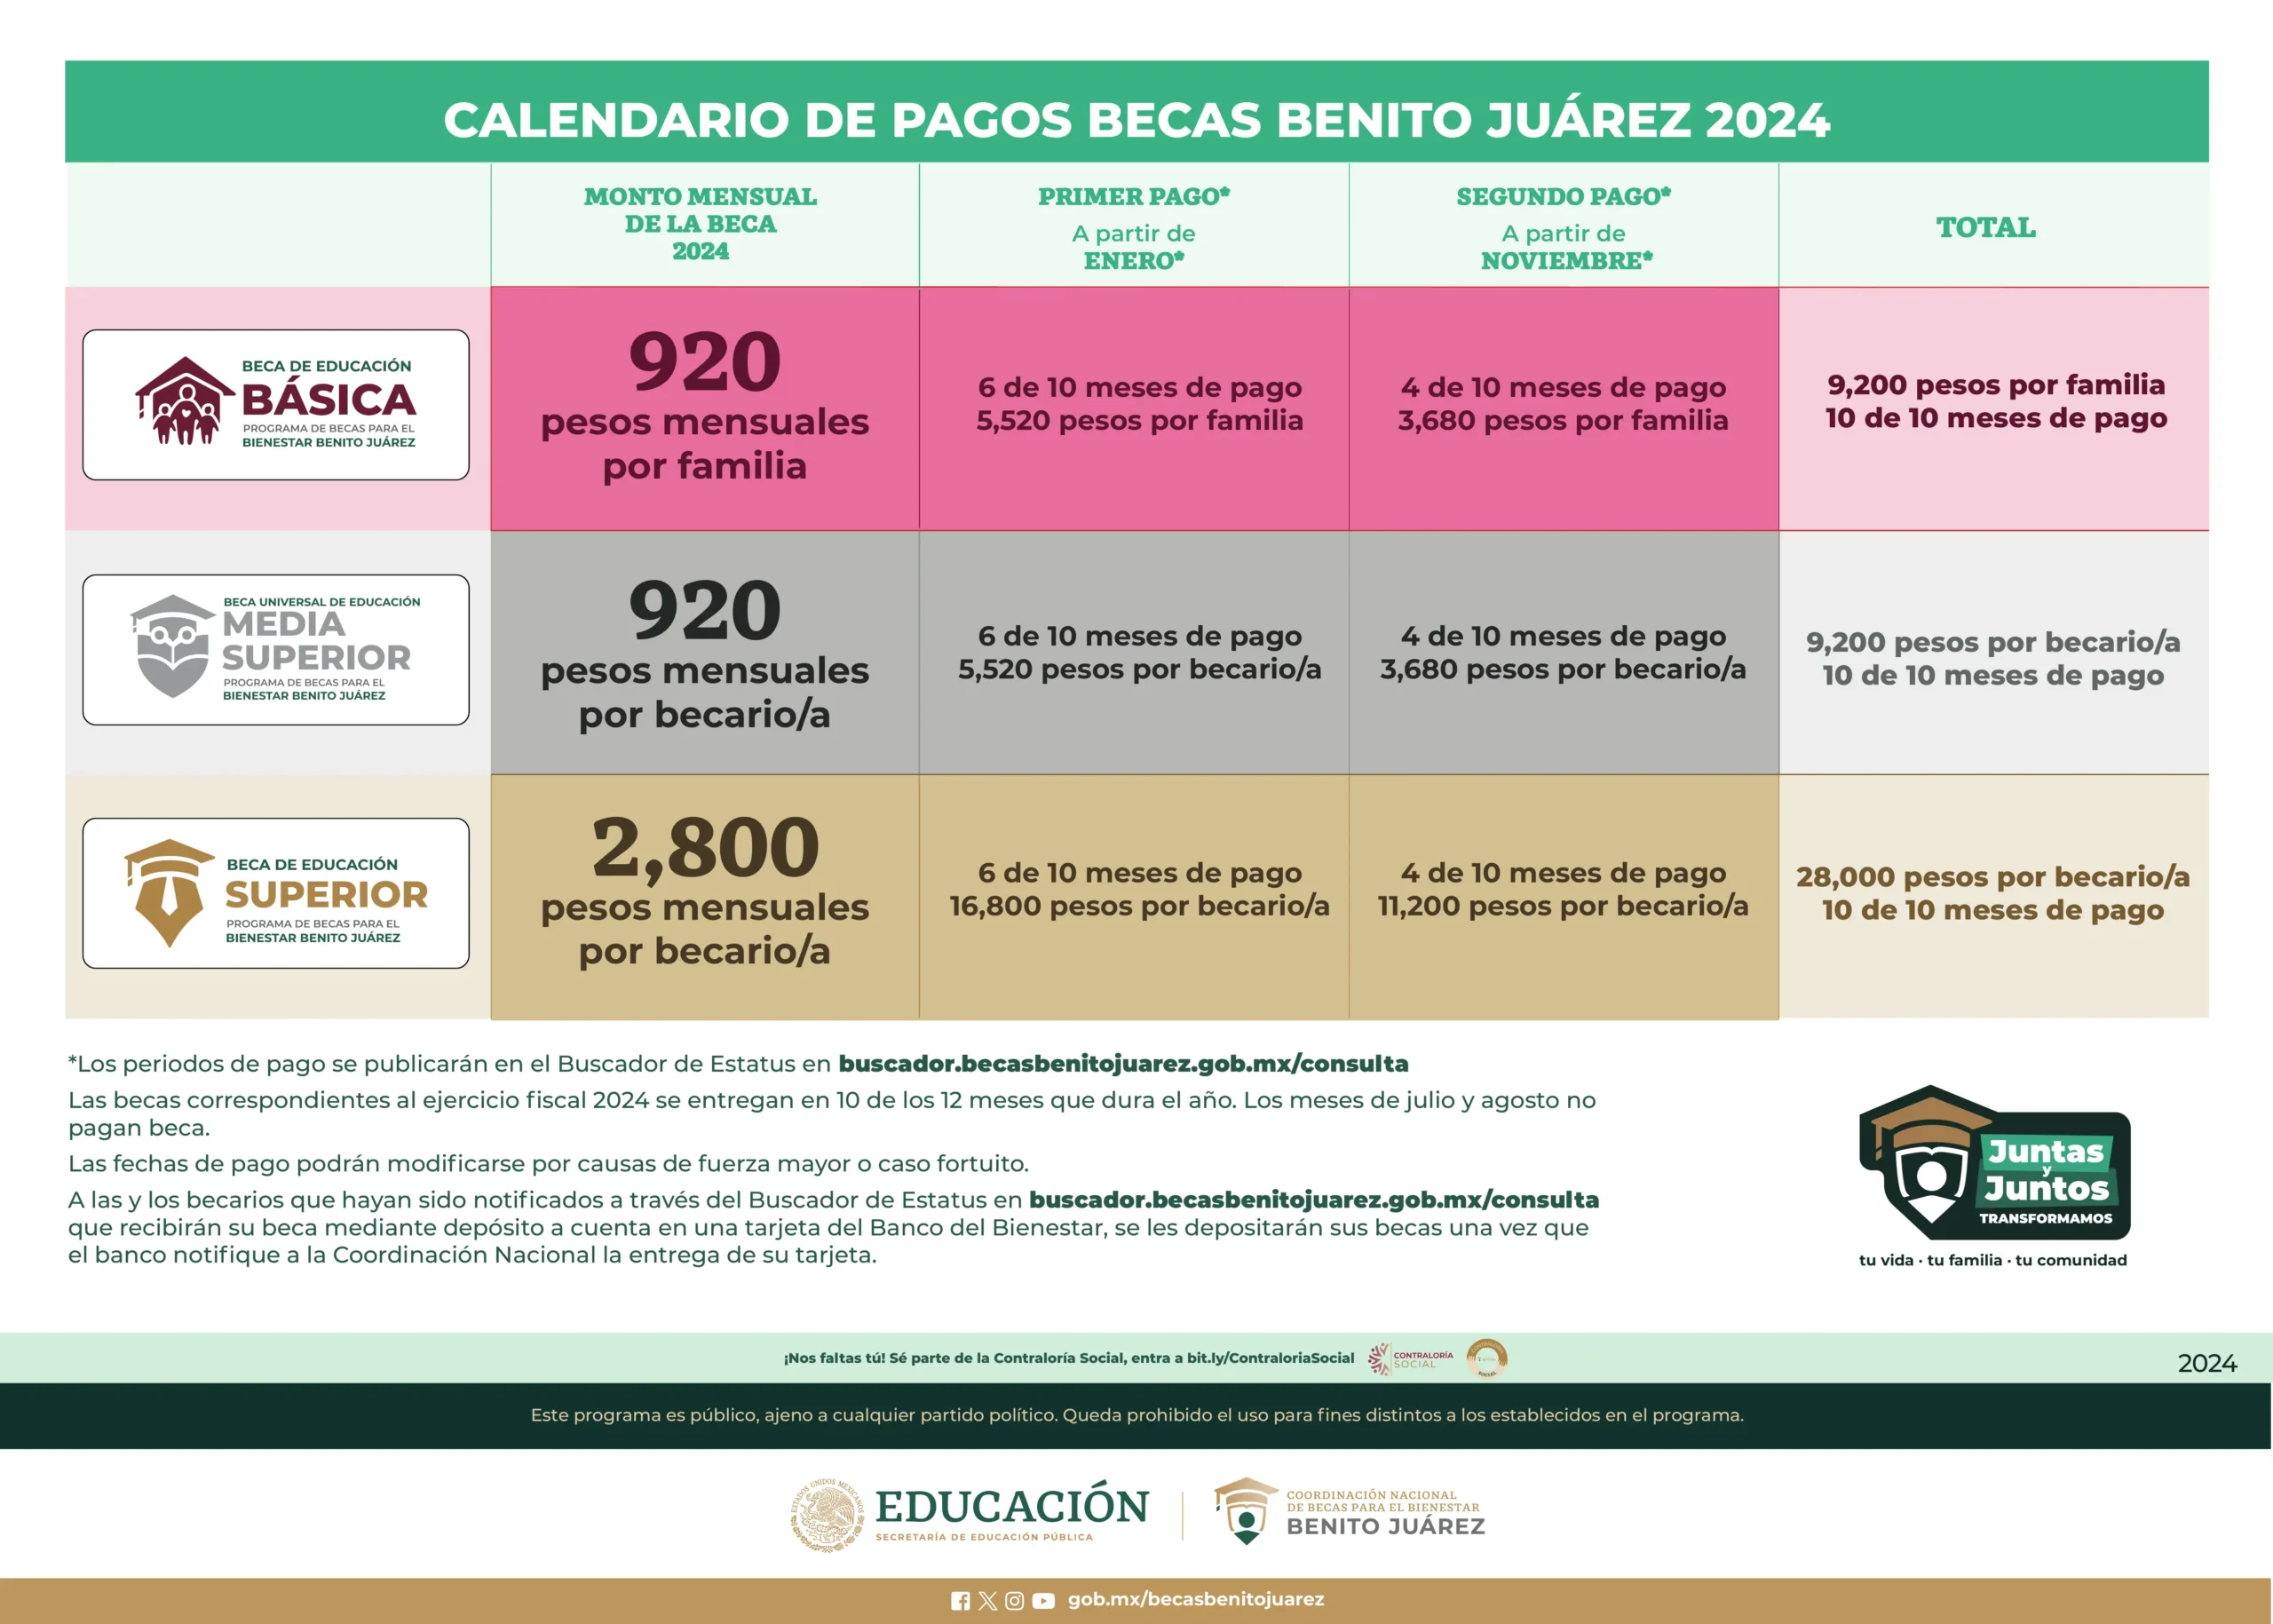 Calendario de pagos becas Benito Juarez 2024